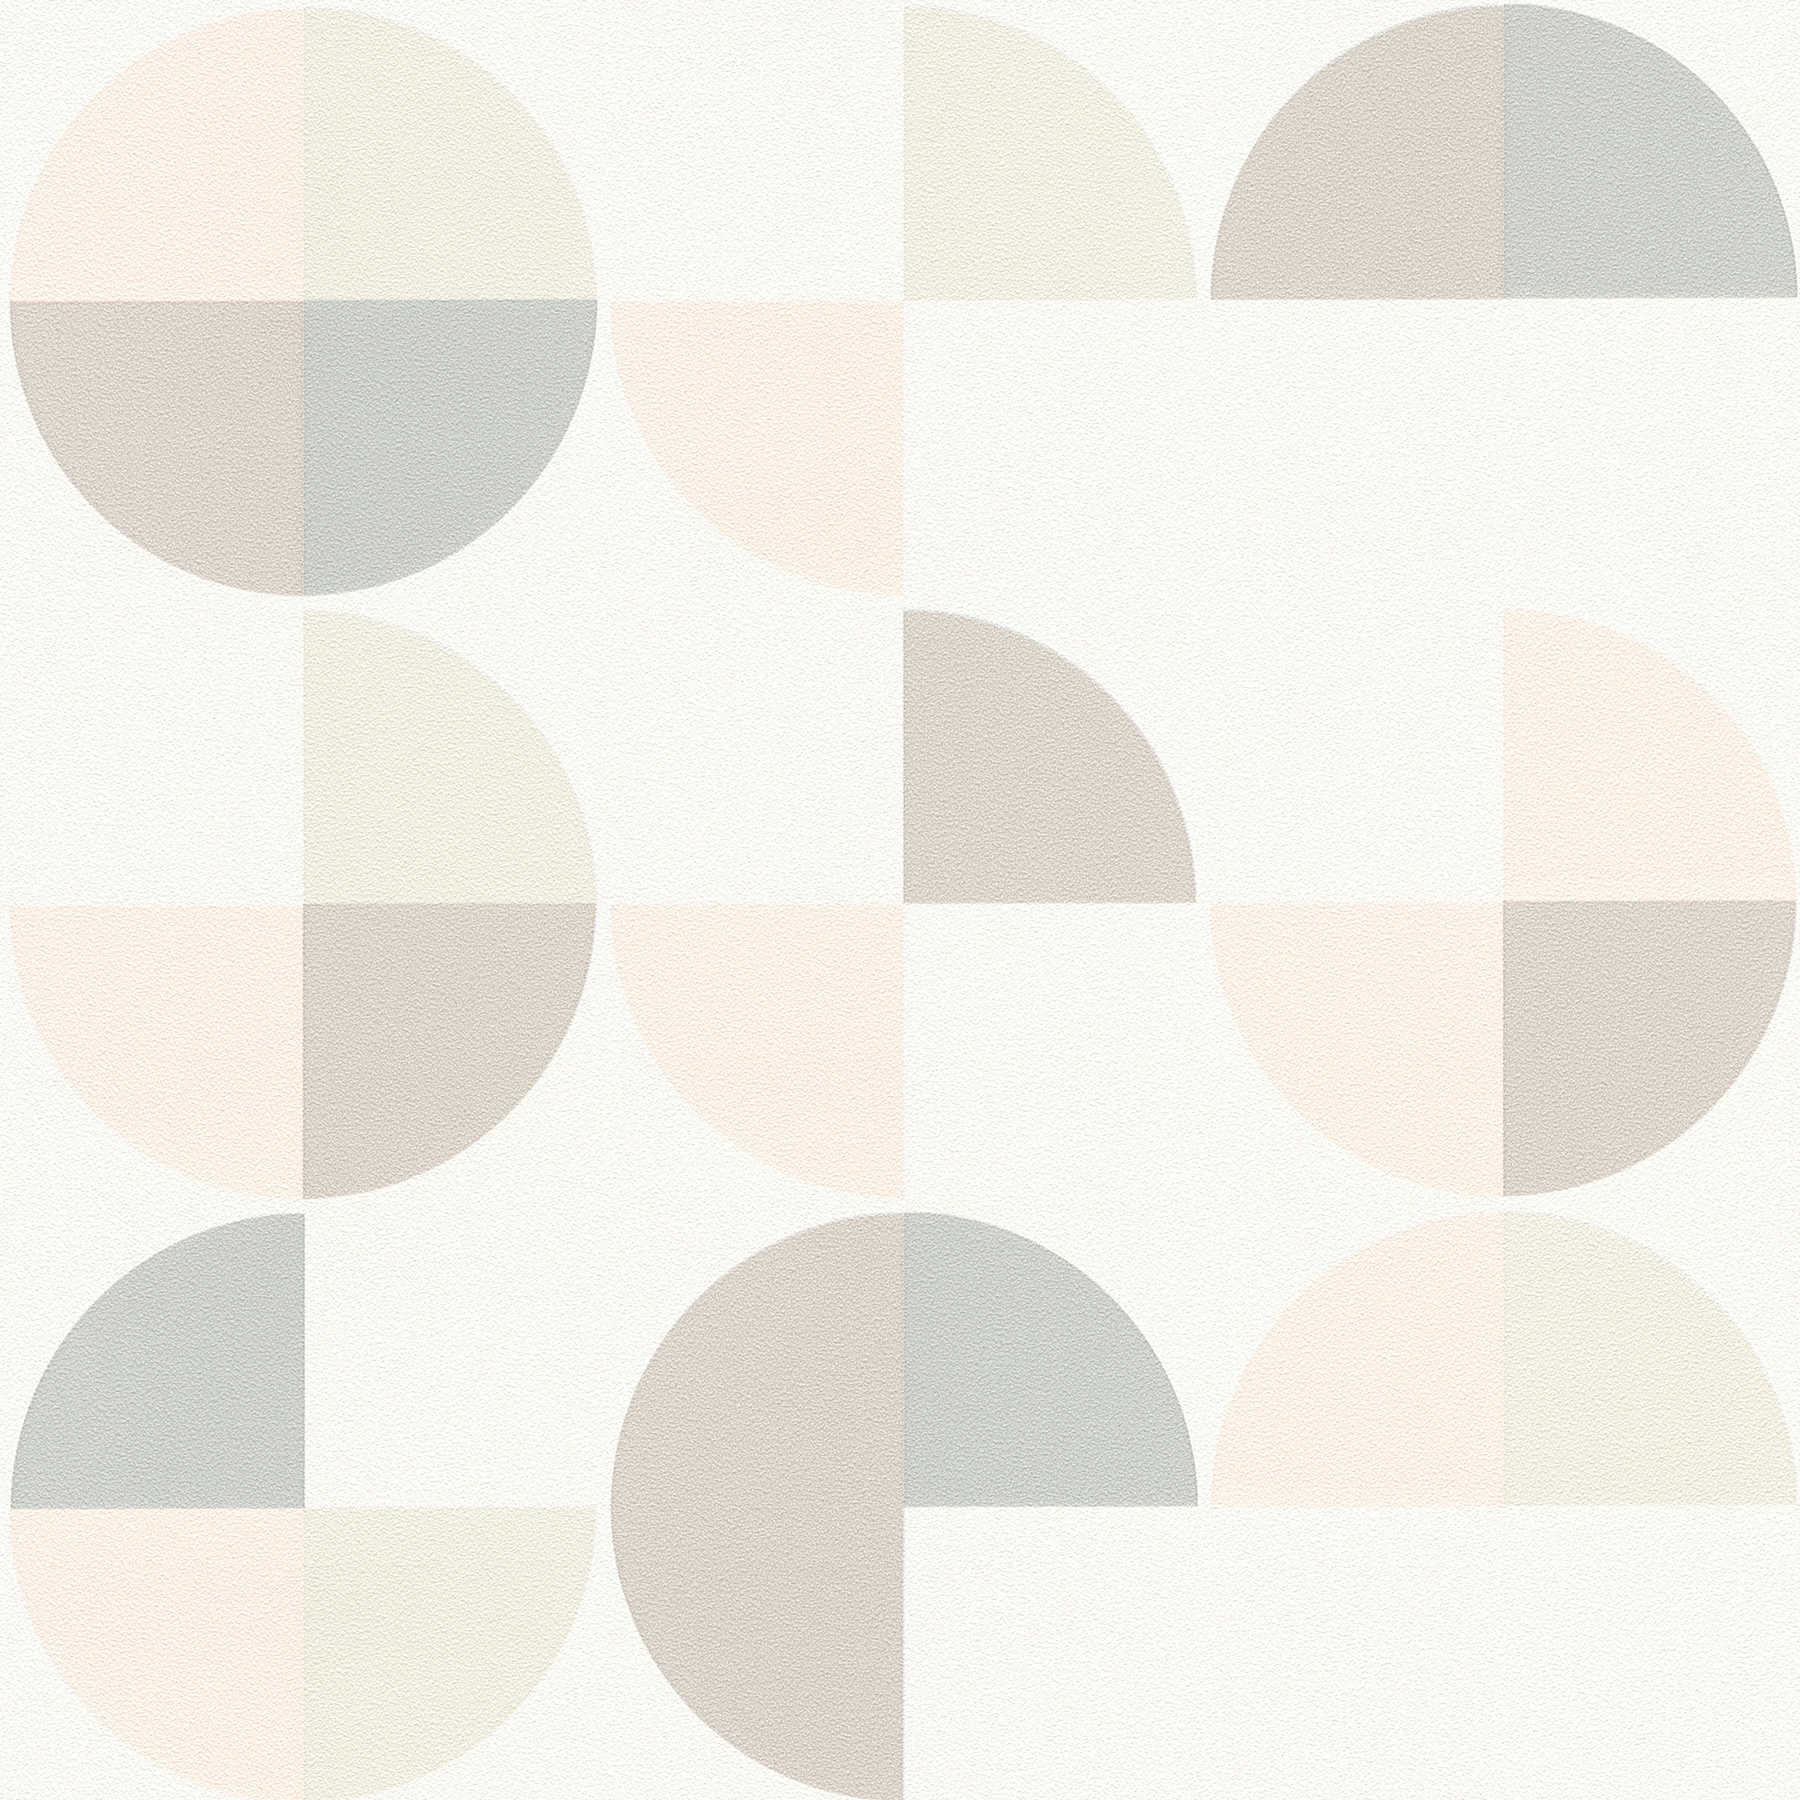 Geometrisch patroonbehang in Scandinavische stijl - grijs, roze, beige
